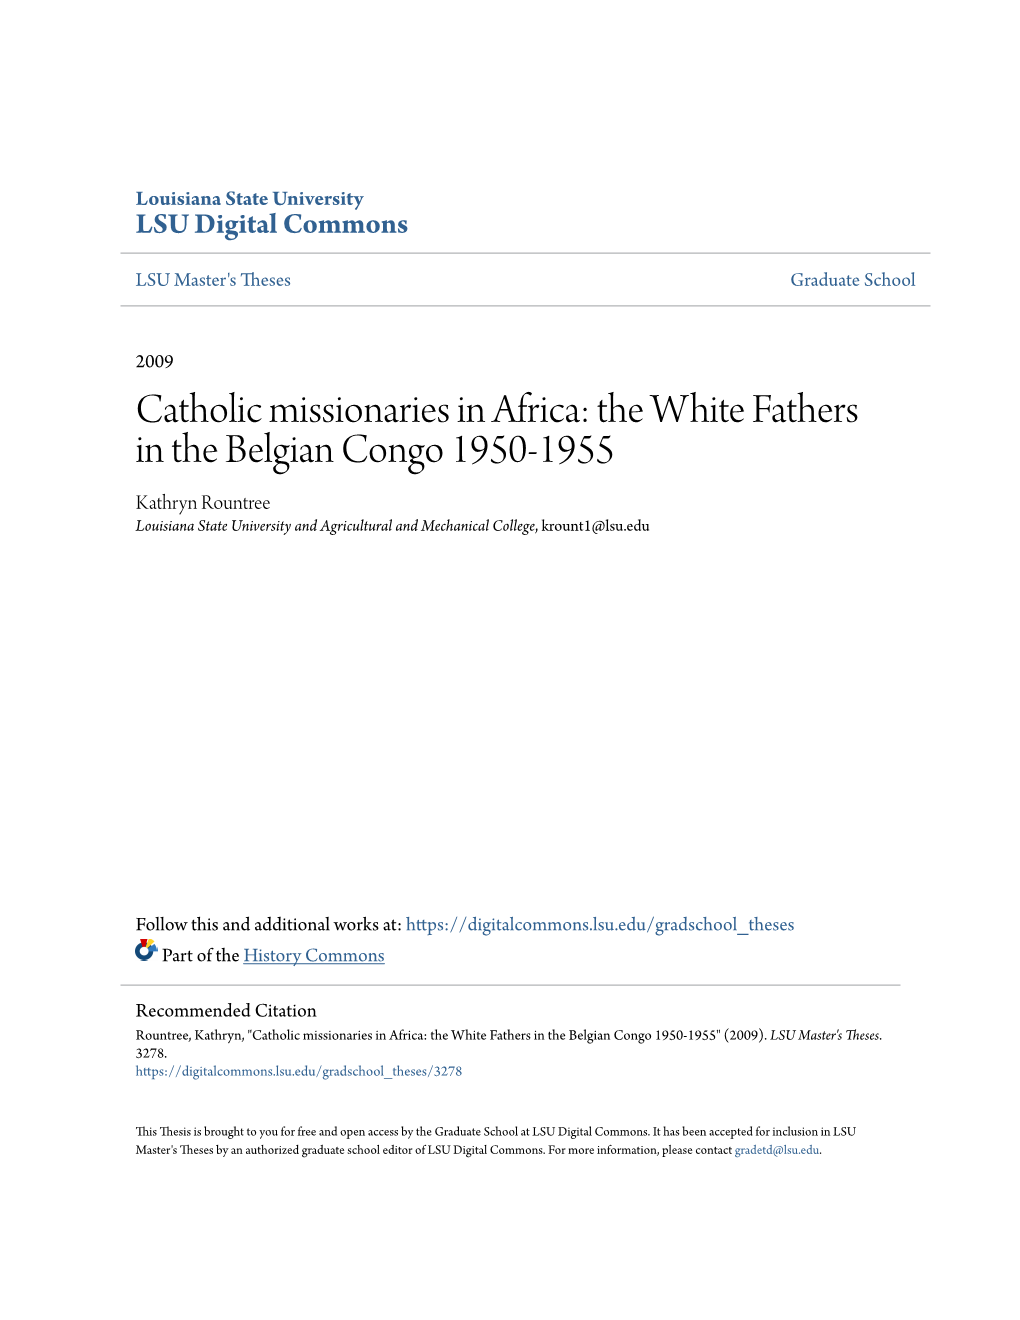 Catholic Missionaries in Africa